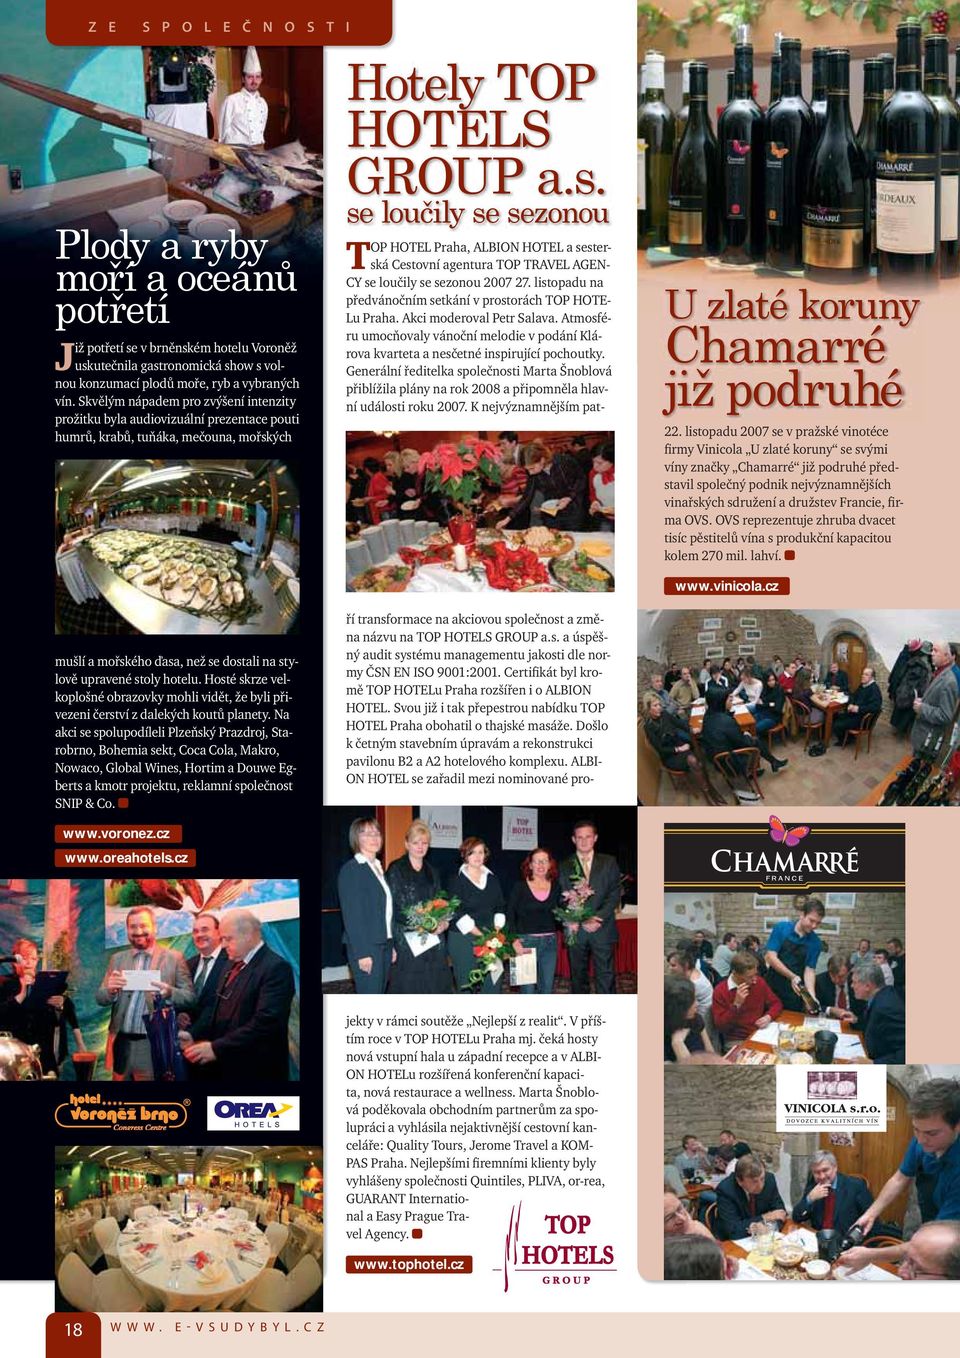 listopadu 2007 se v pražské vinotéce firmy Vinicola U zlaté koruny se svými víny značky Chamarré již podruhé představil společný podnik nejvýznamnějších vinařských sdružení a družstev Francie, firma